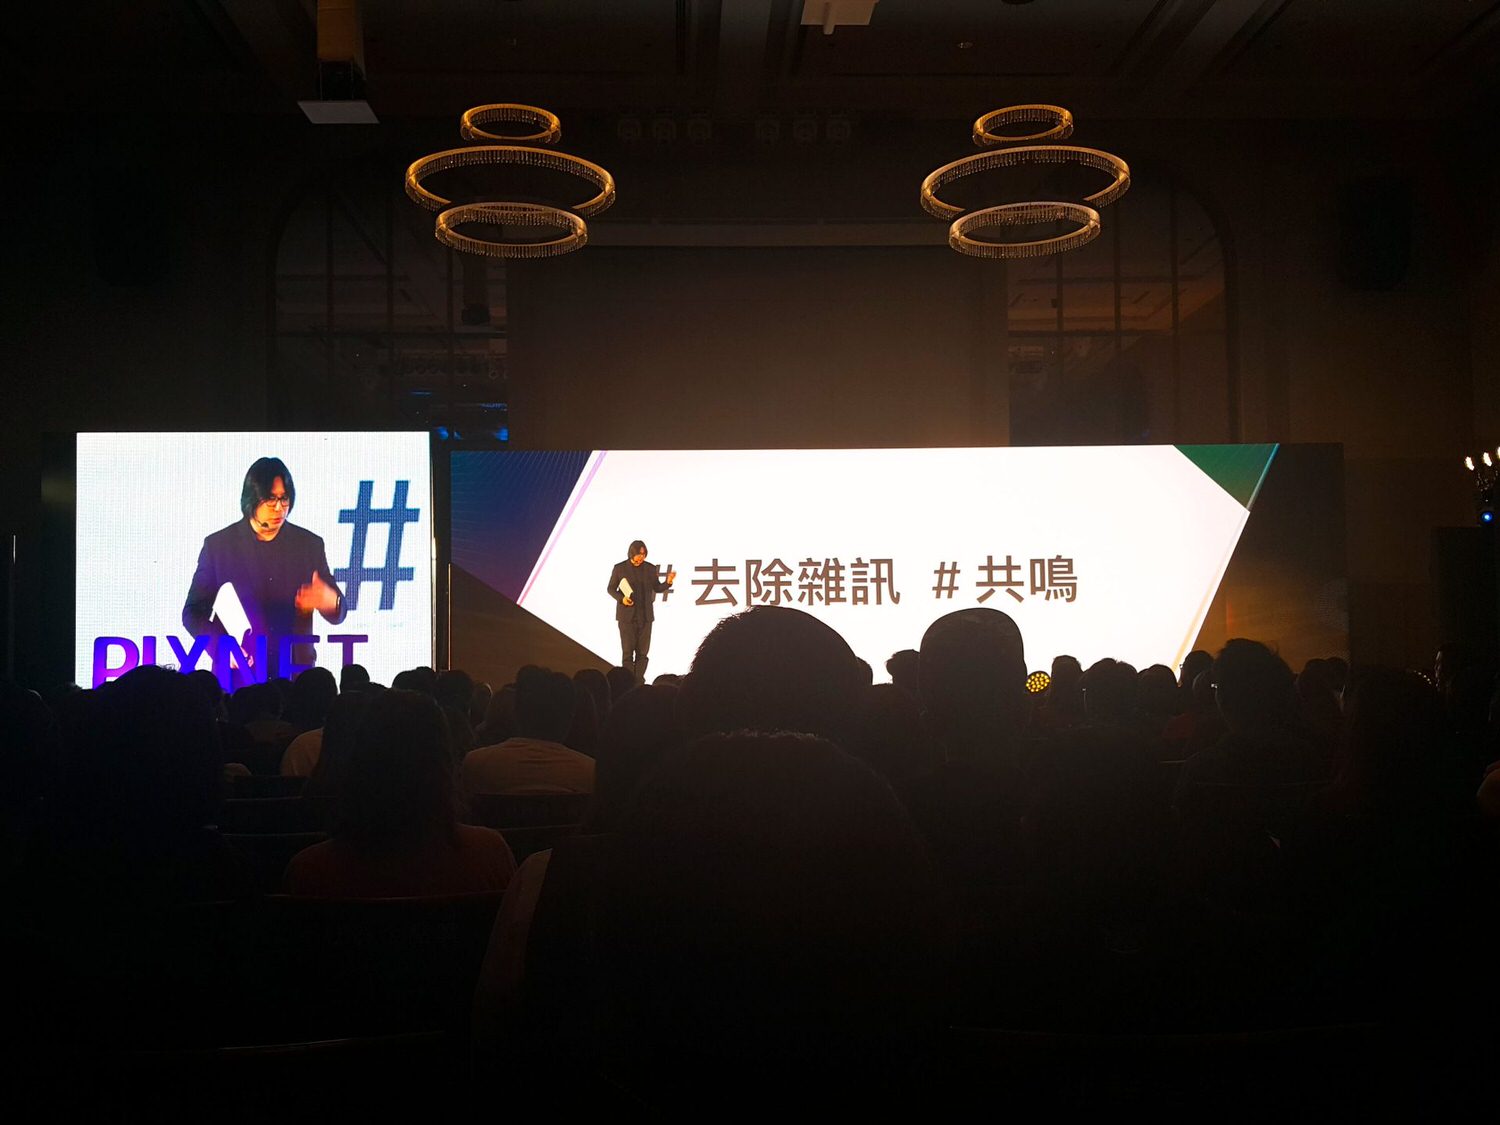 【演講】PIXNET Social Summit 2019 社群高峰會 講座活動紀錄 & 2018痞客邦社群金點賞